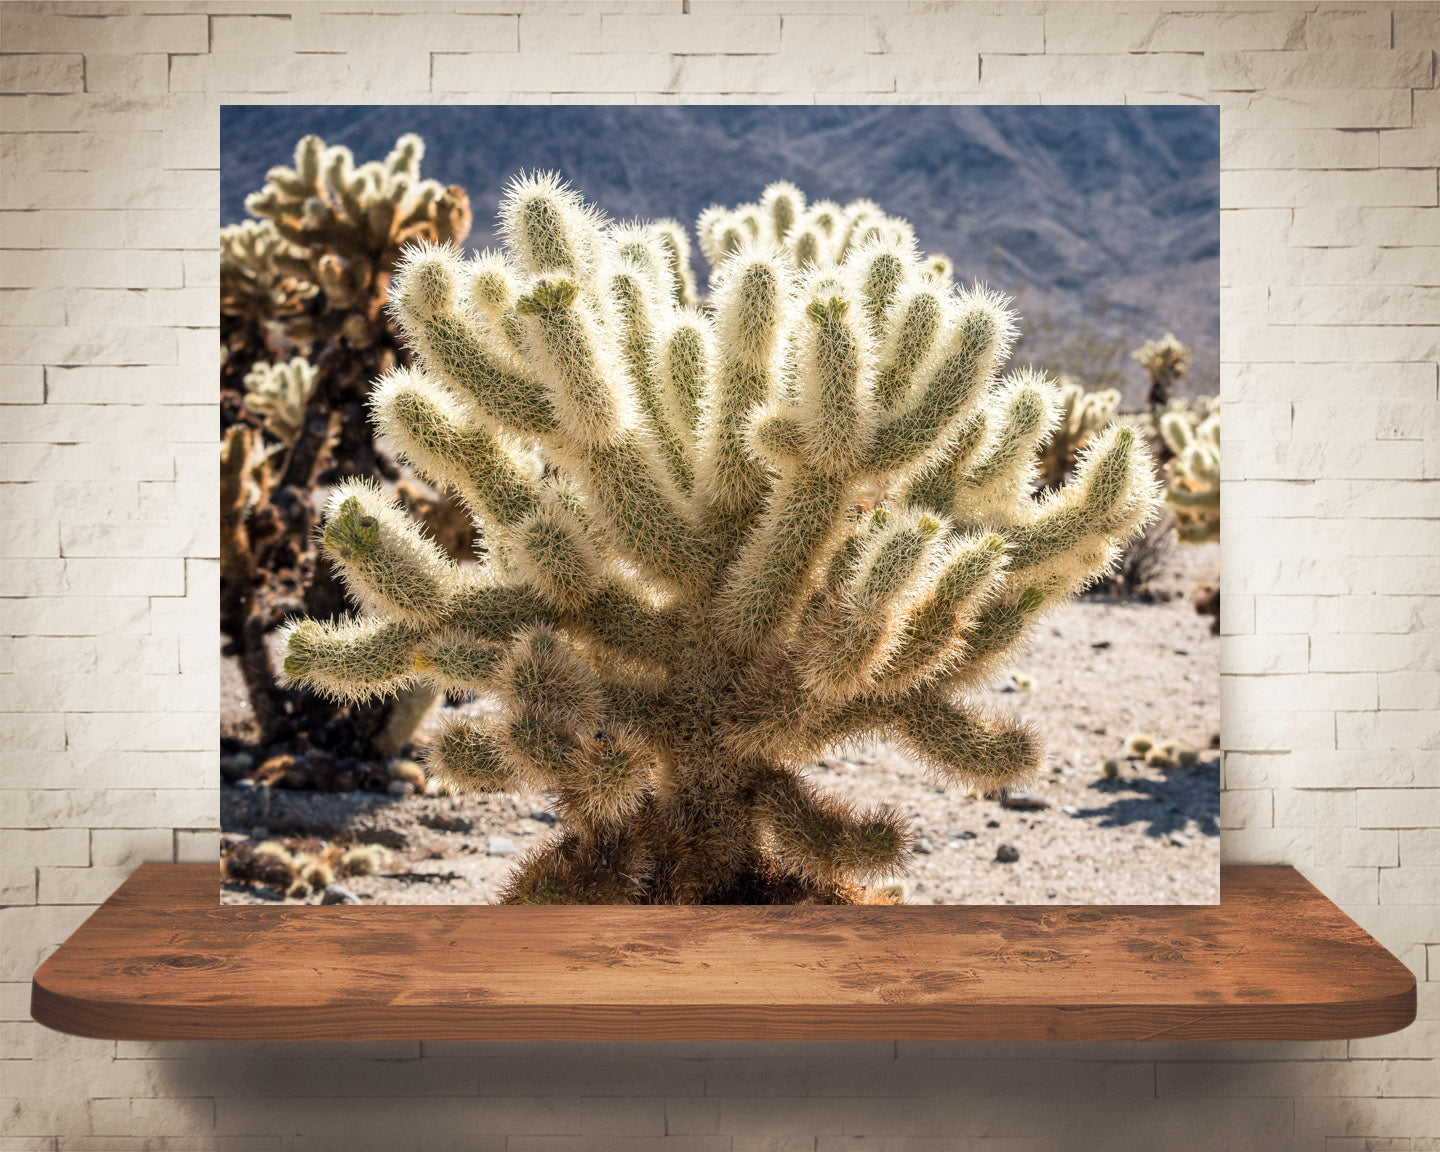 Teddy Bear Cholla Cactus Photograph